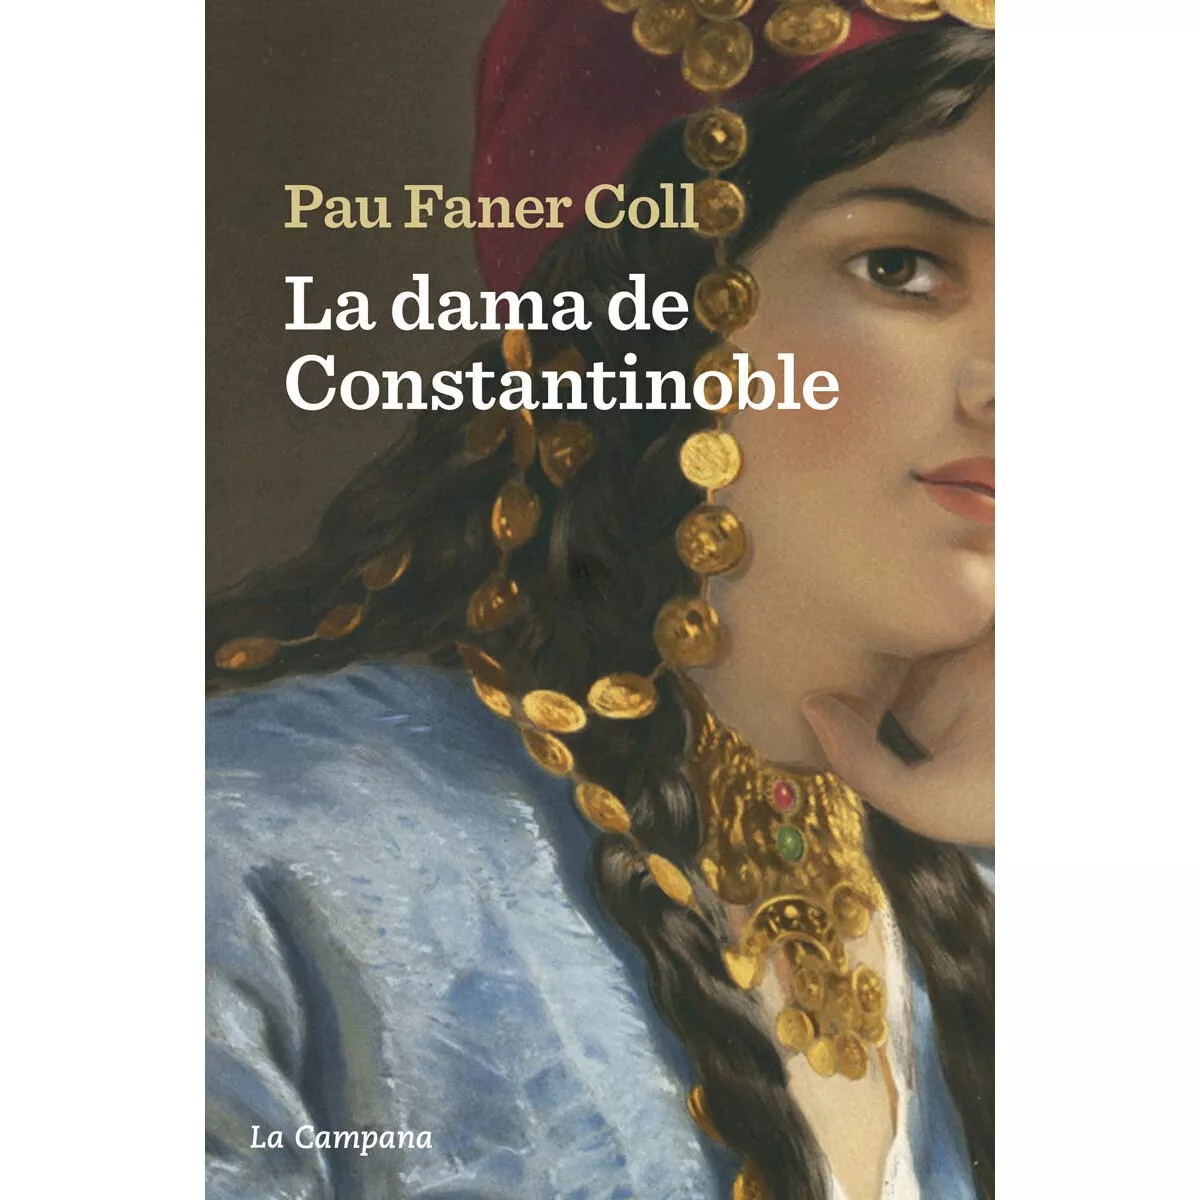 'La dama de Constantinoble'